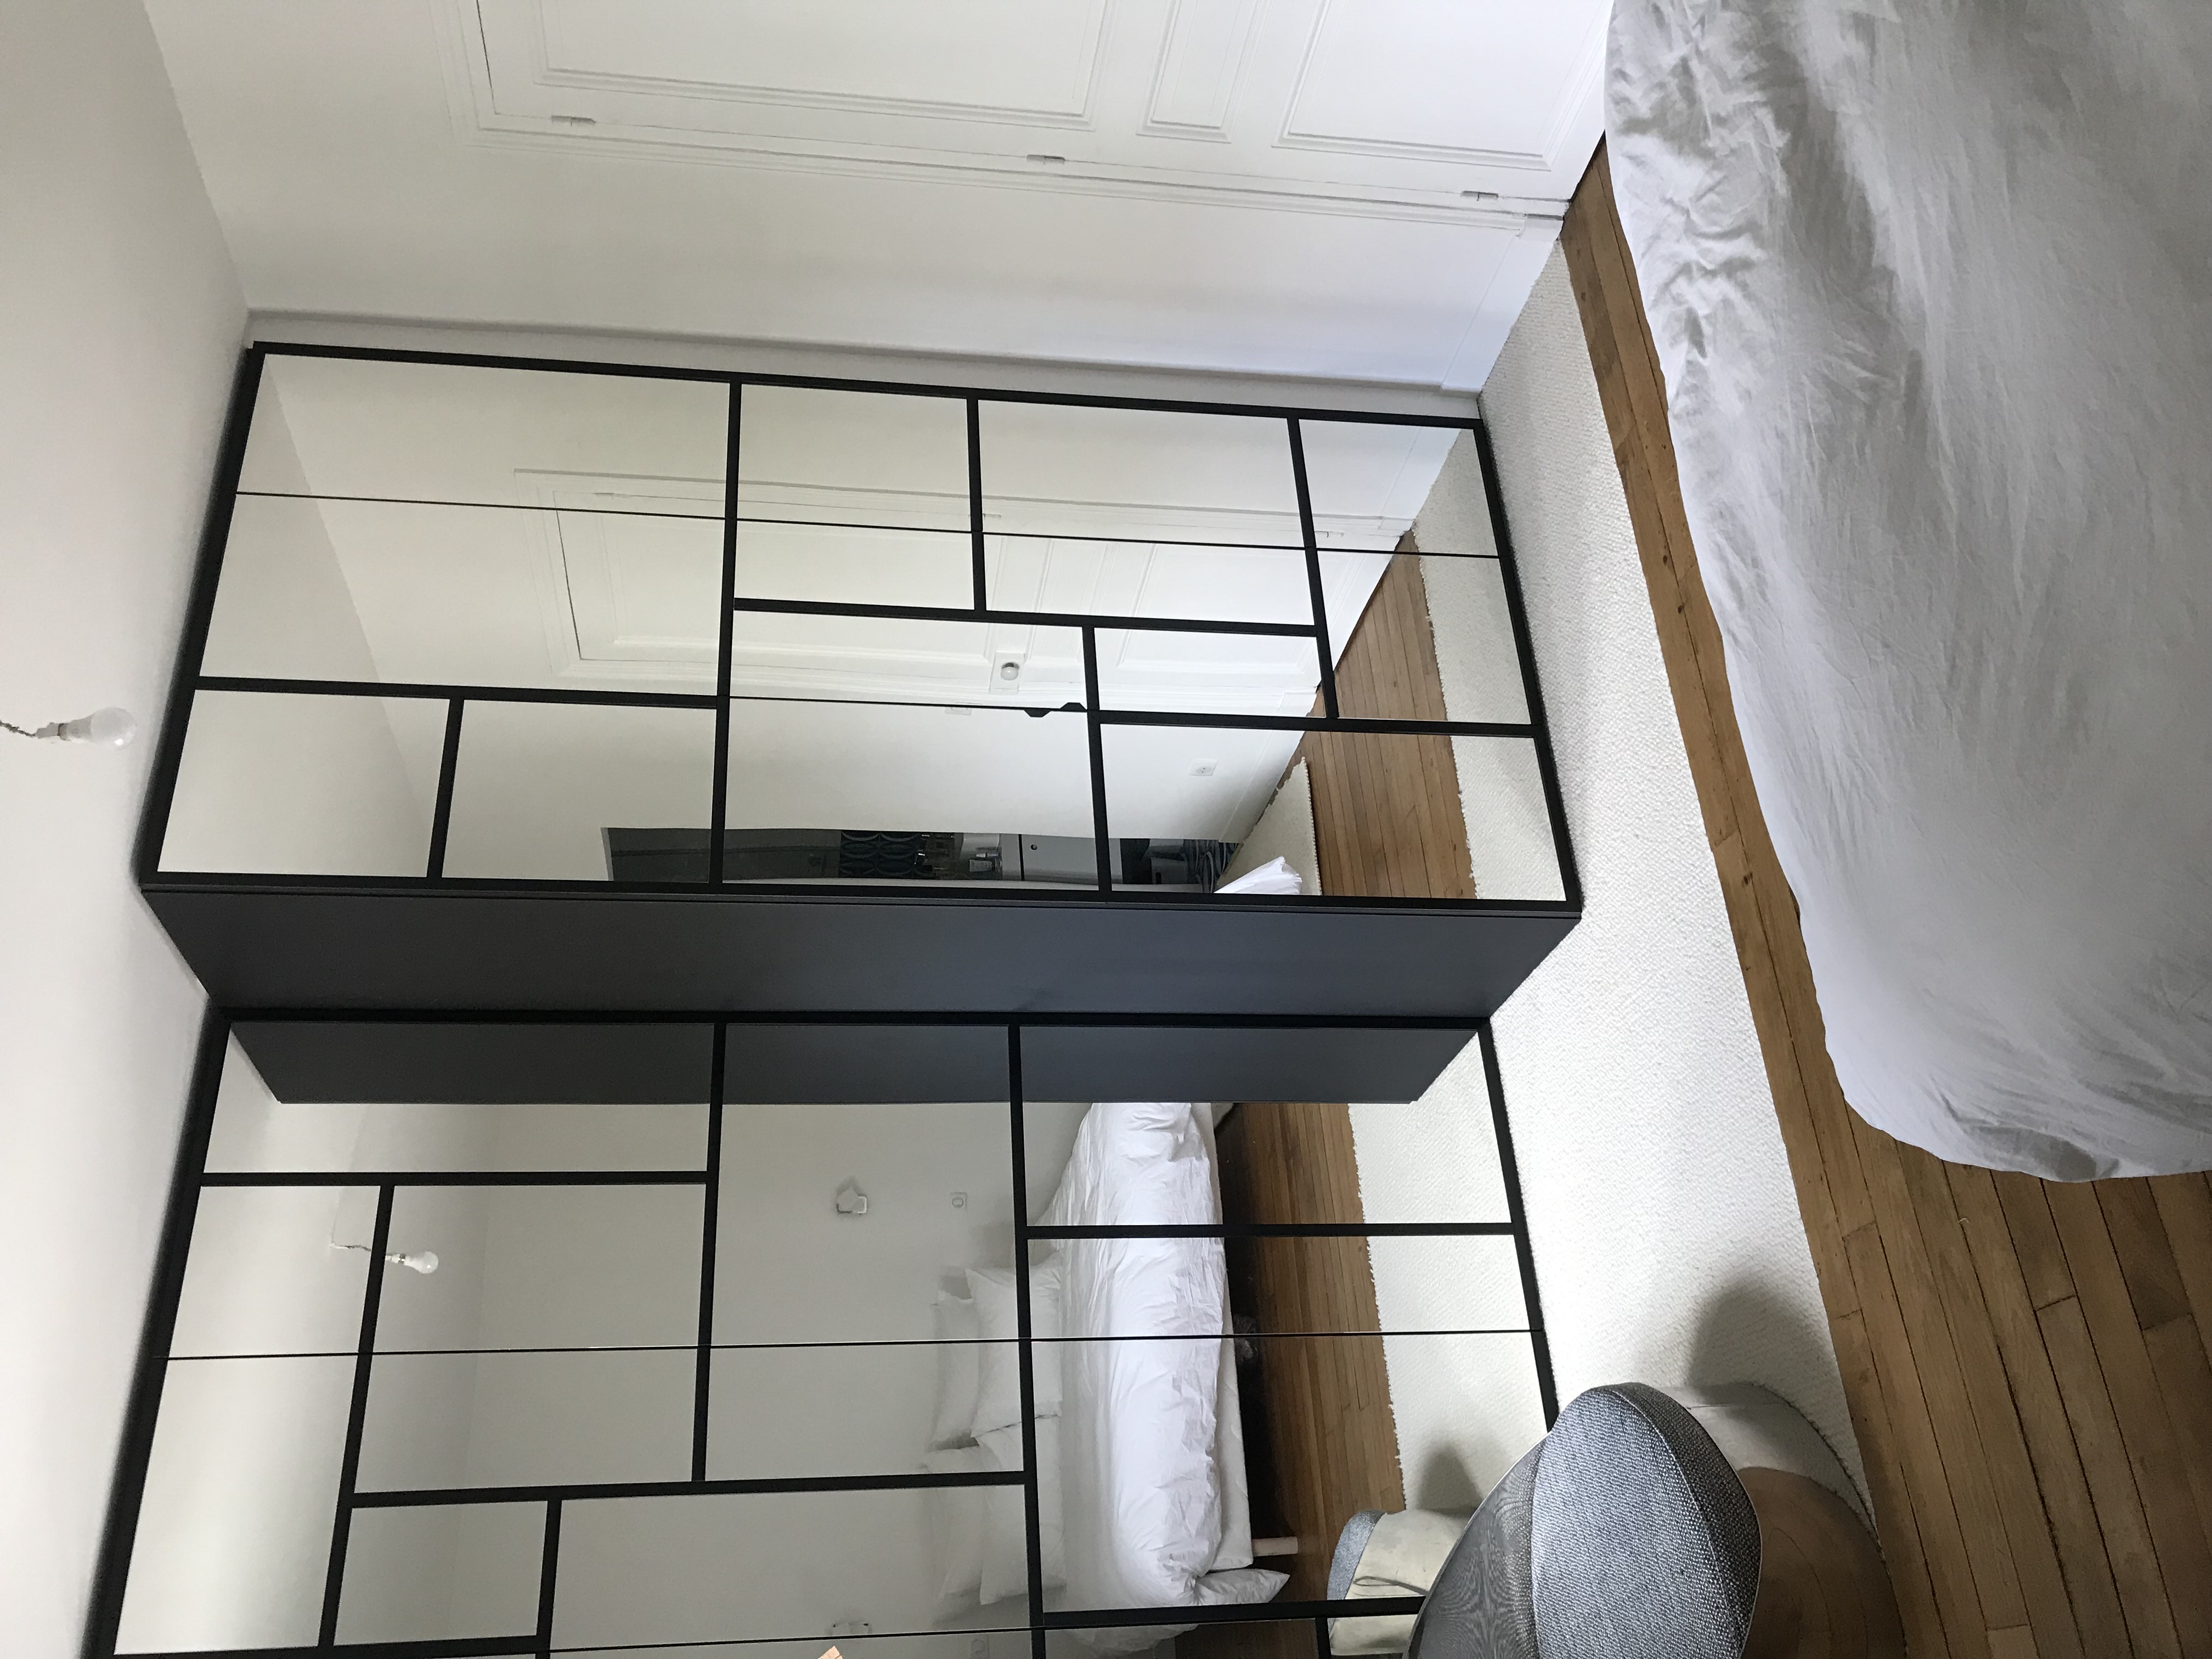 Miroirs et stratifié noir mat, façon Mondrian